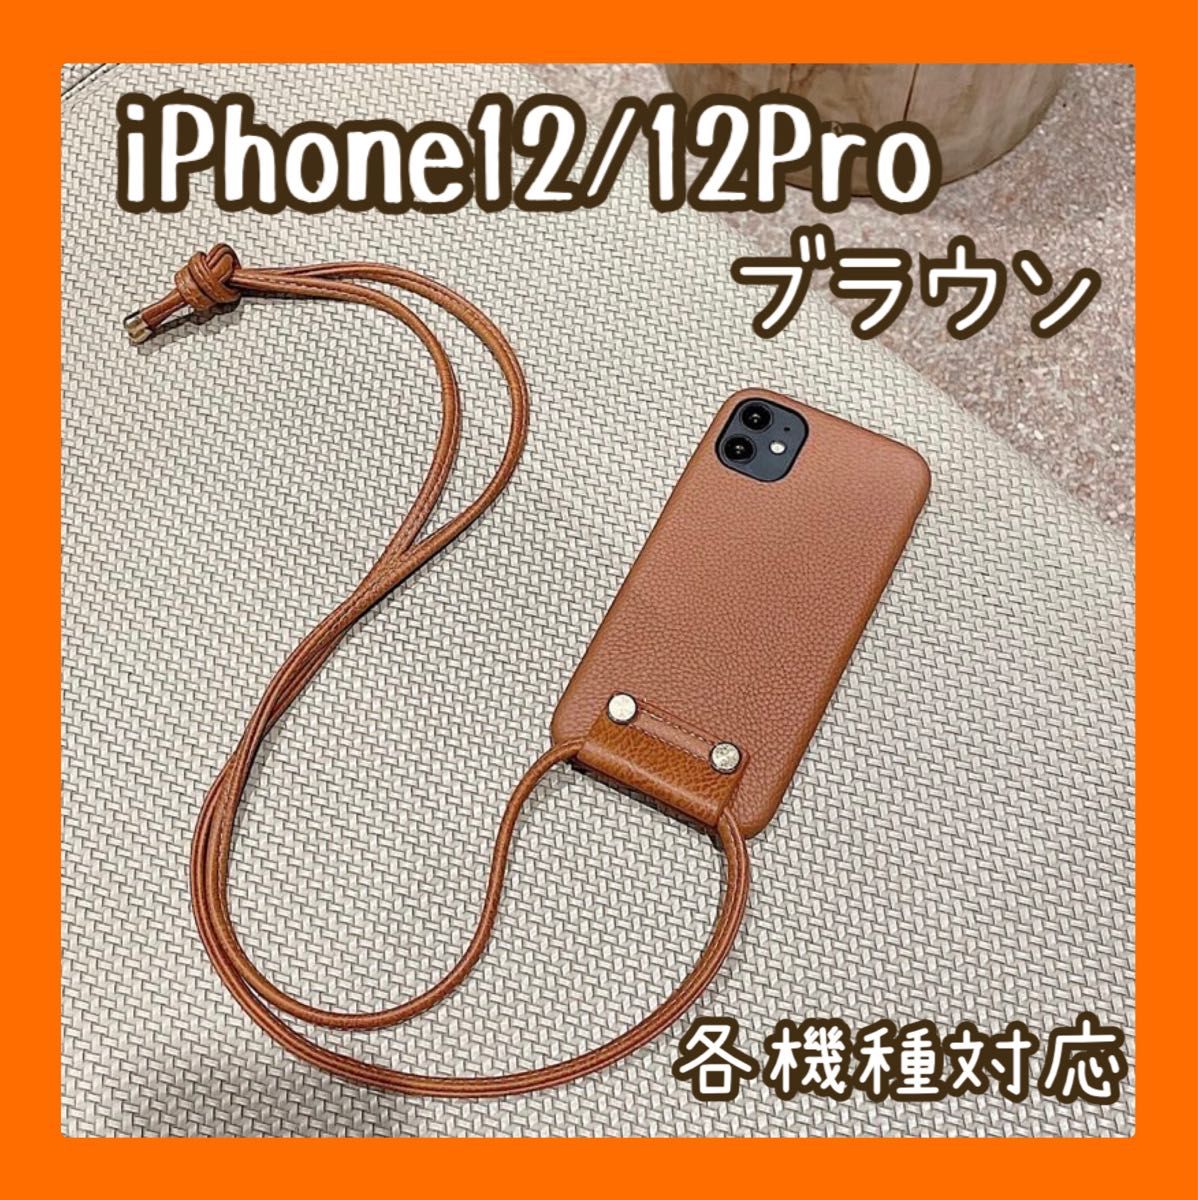 数量限定 大人気 iPhone12/12Pro iPhoneケースブラウン ショルダー 携帯ケース 韓国